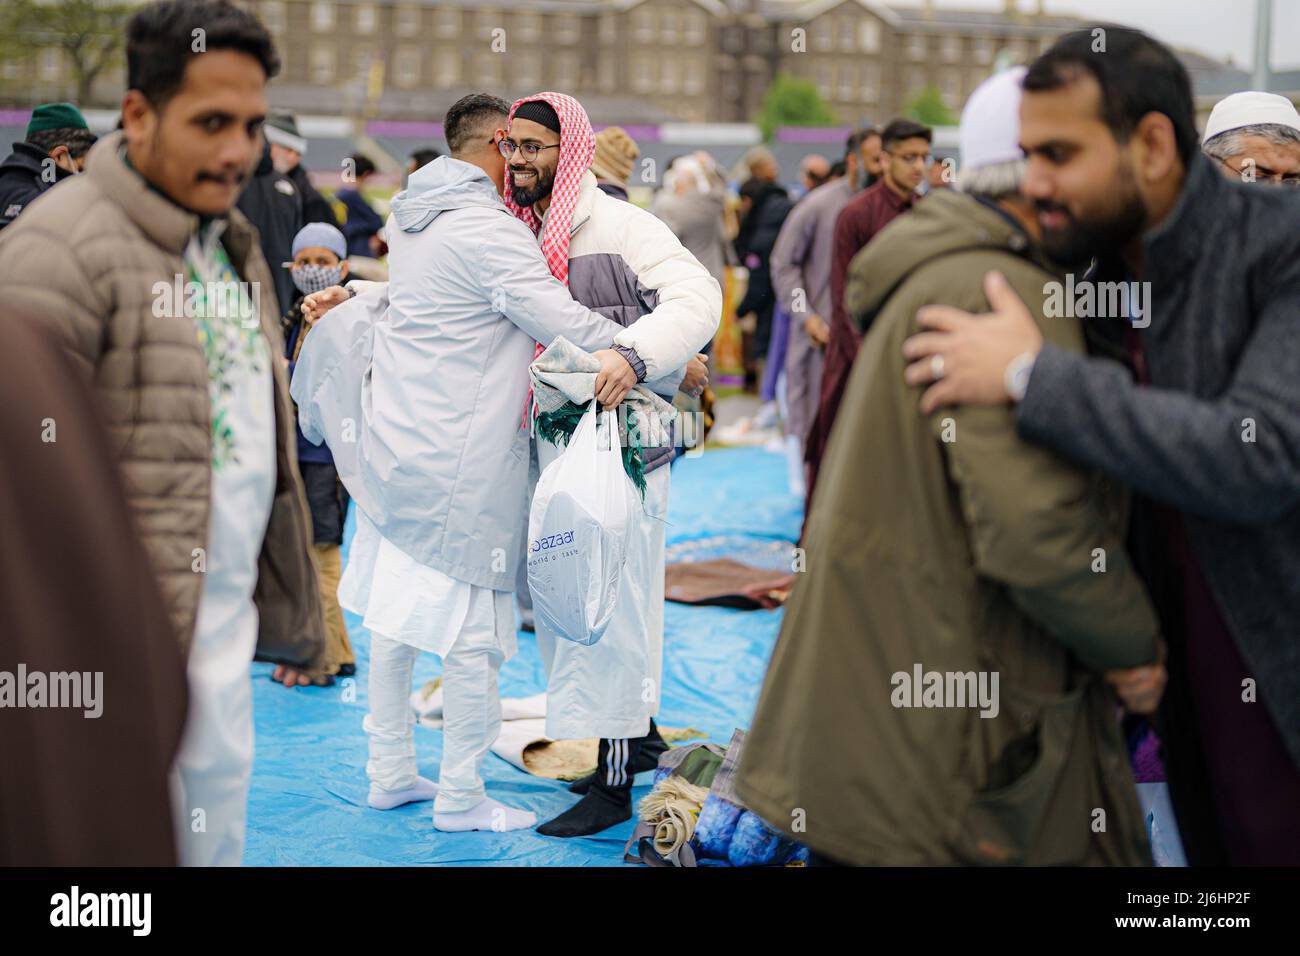 Die Menschen umarmen und grüßen sich nach dem Eid-Gebet während der Sunnah, während sie im Freien im Big Eid Salah in Bristol beten: Eid al-Fitr 2022, als der heilige Monat Ramadan zu Ende geht und Muslime Eid al-Fitr feiern. Bilddatum: Montag, 2. Mai 2022. Stockfoto